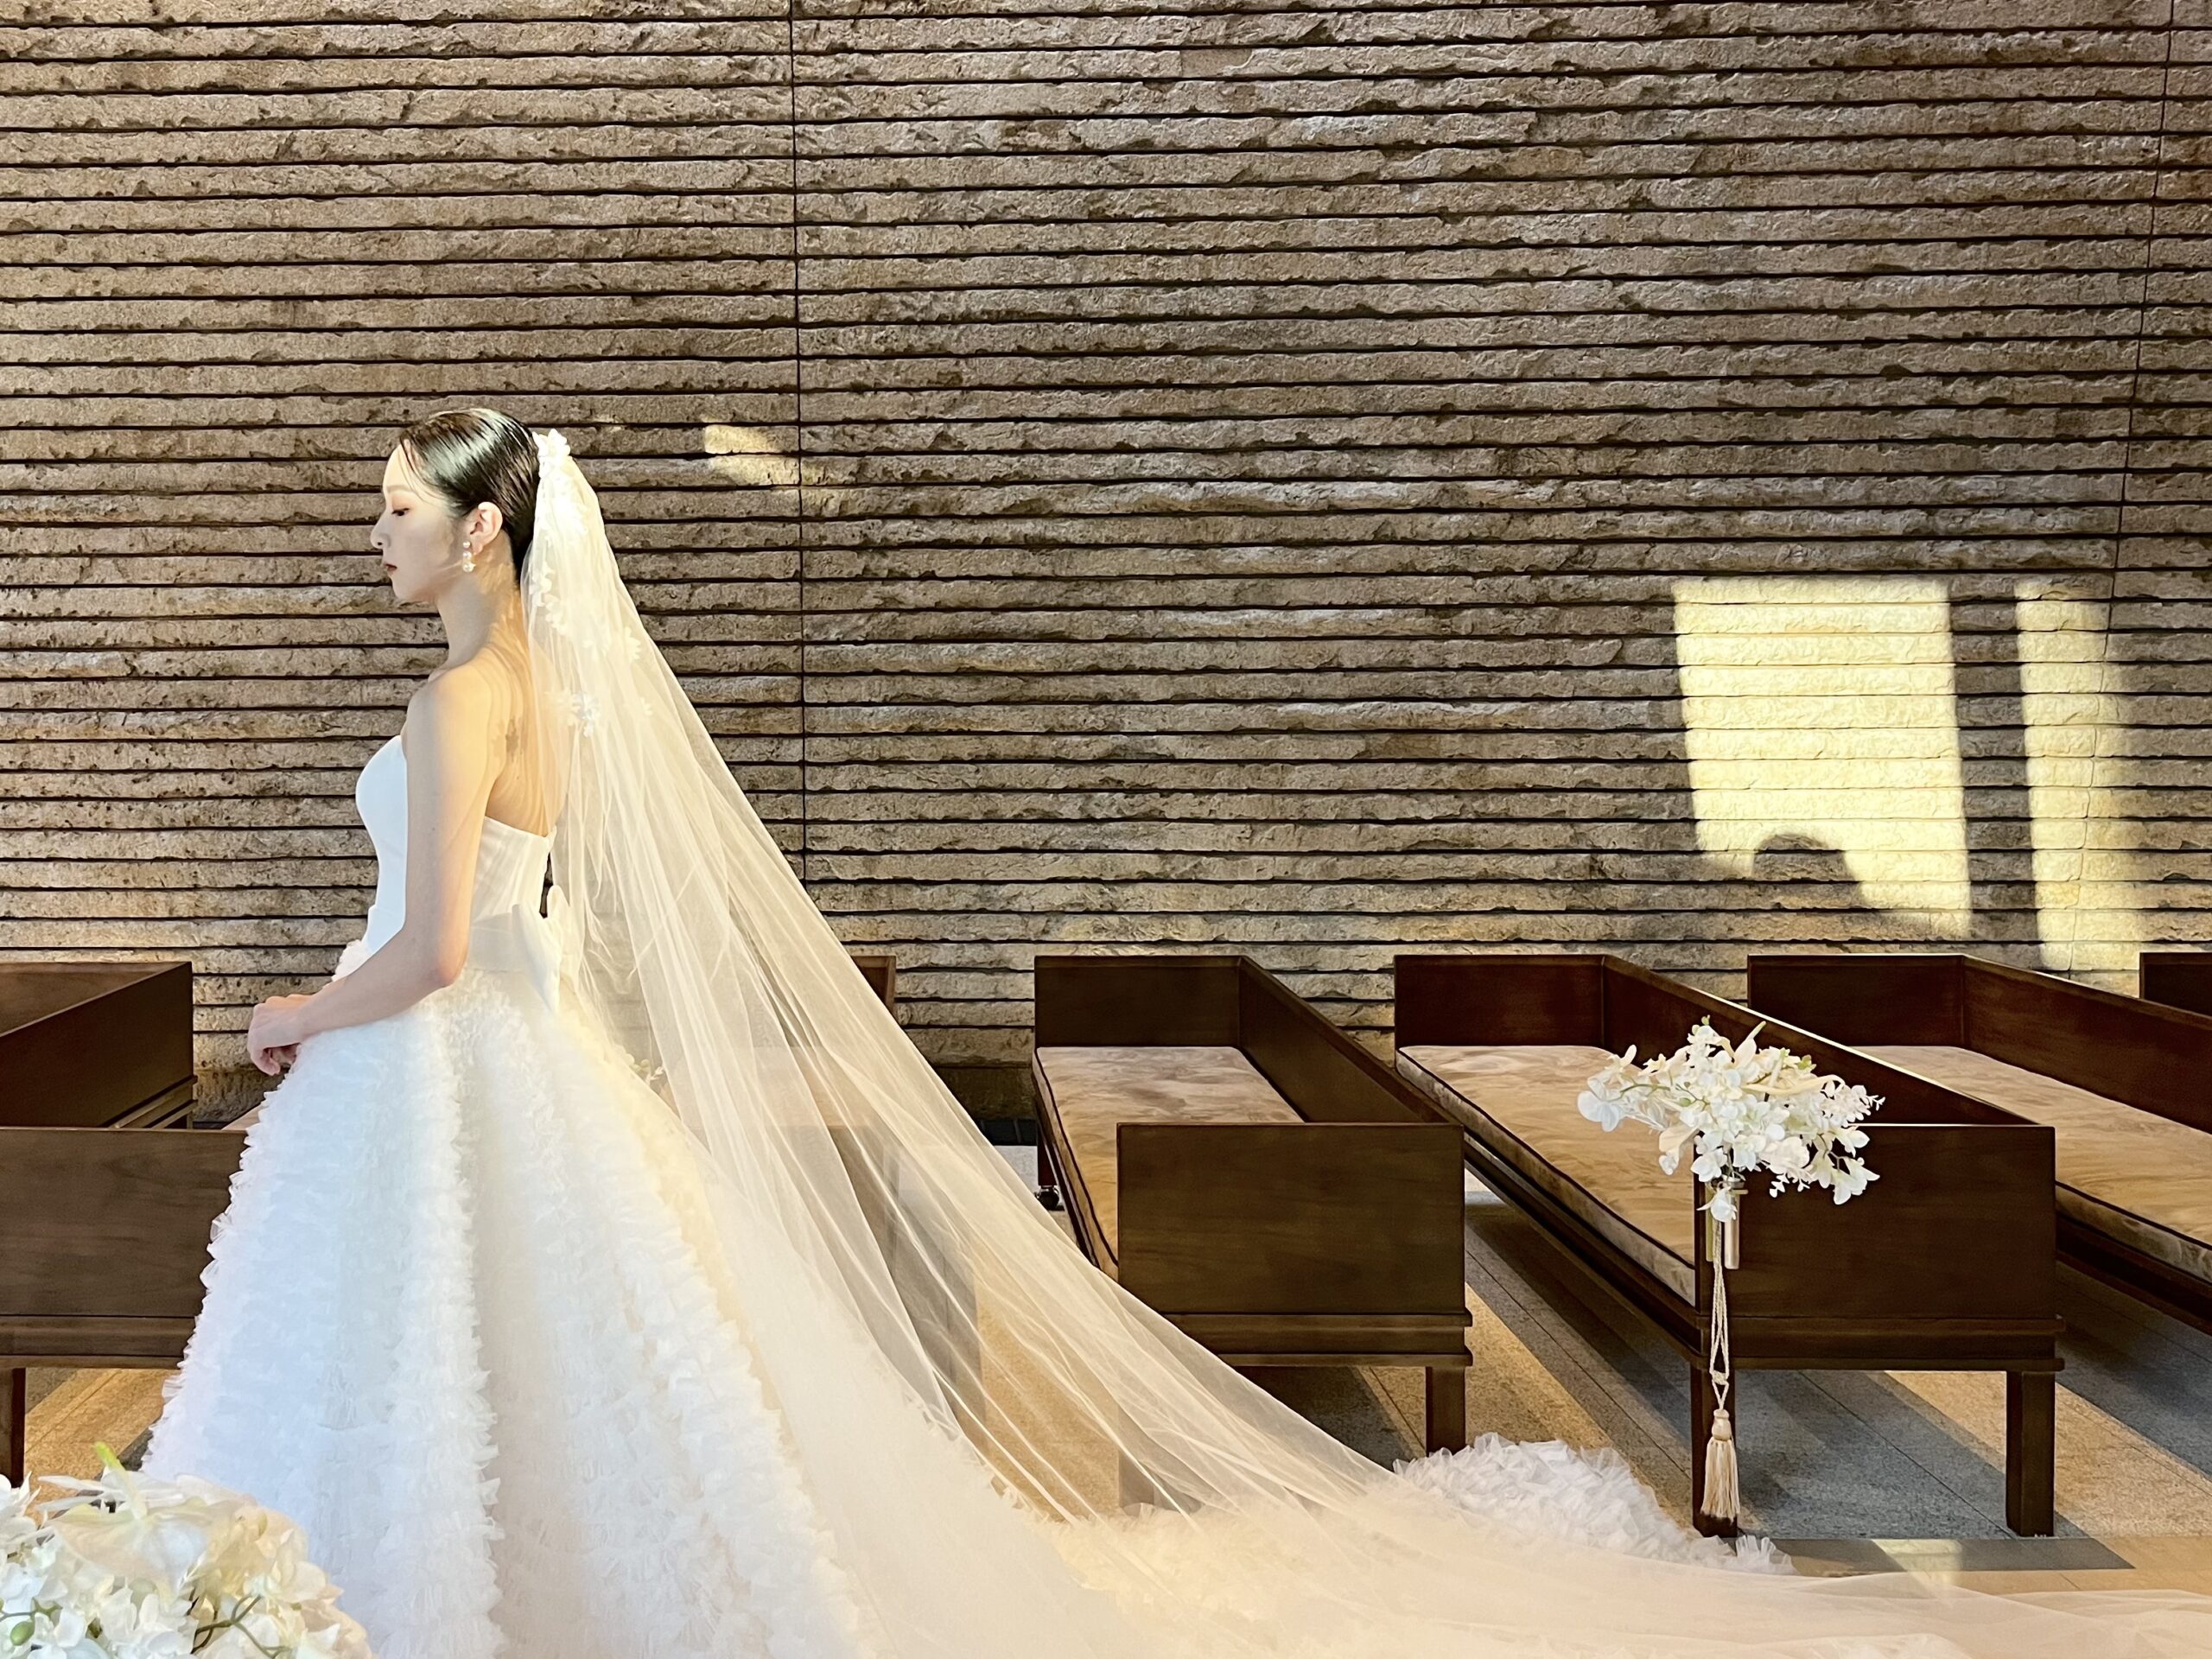 OHK花嫁におすすめしたいヴィクターアンドロルフのウェディングドレスとベールはロングトレーンが美しい